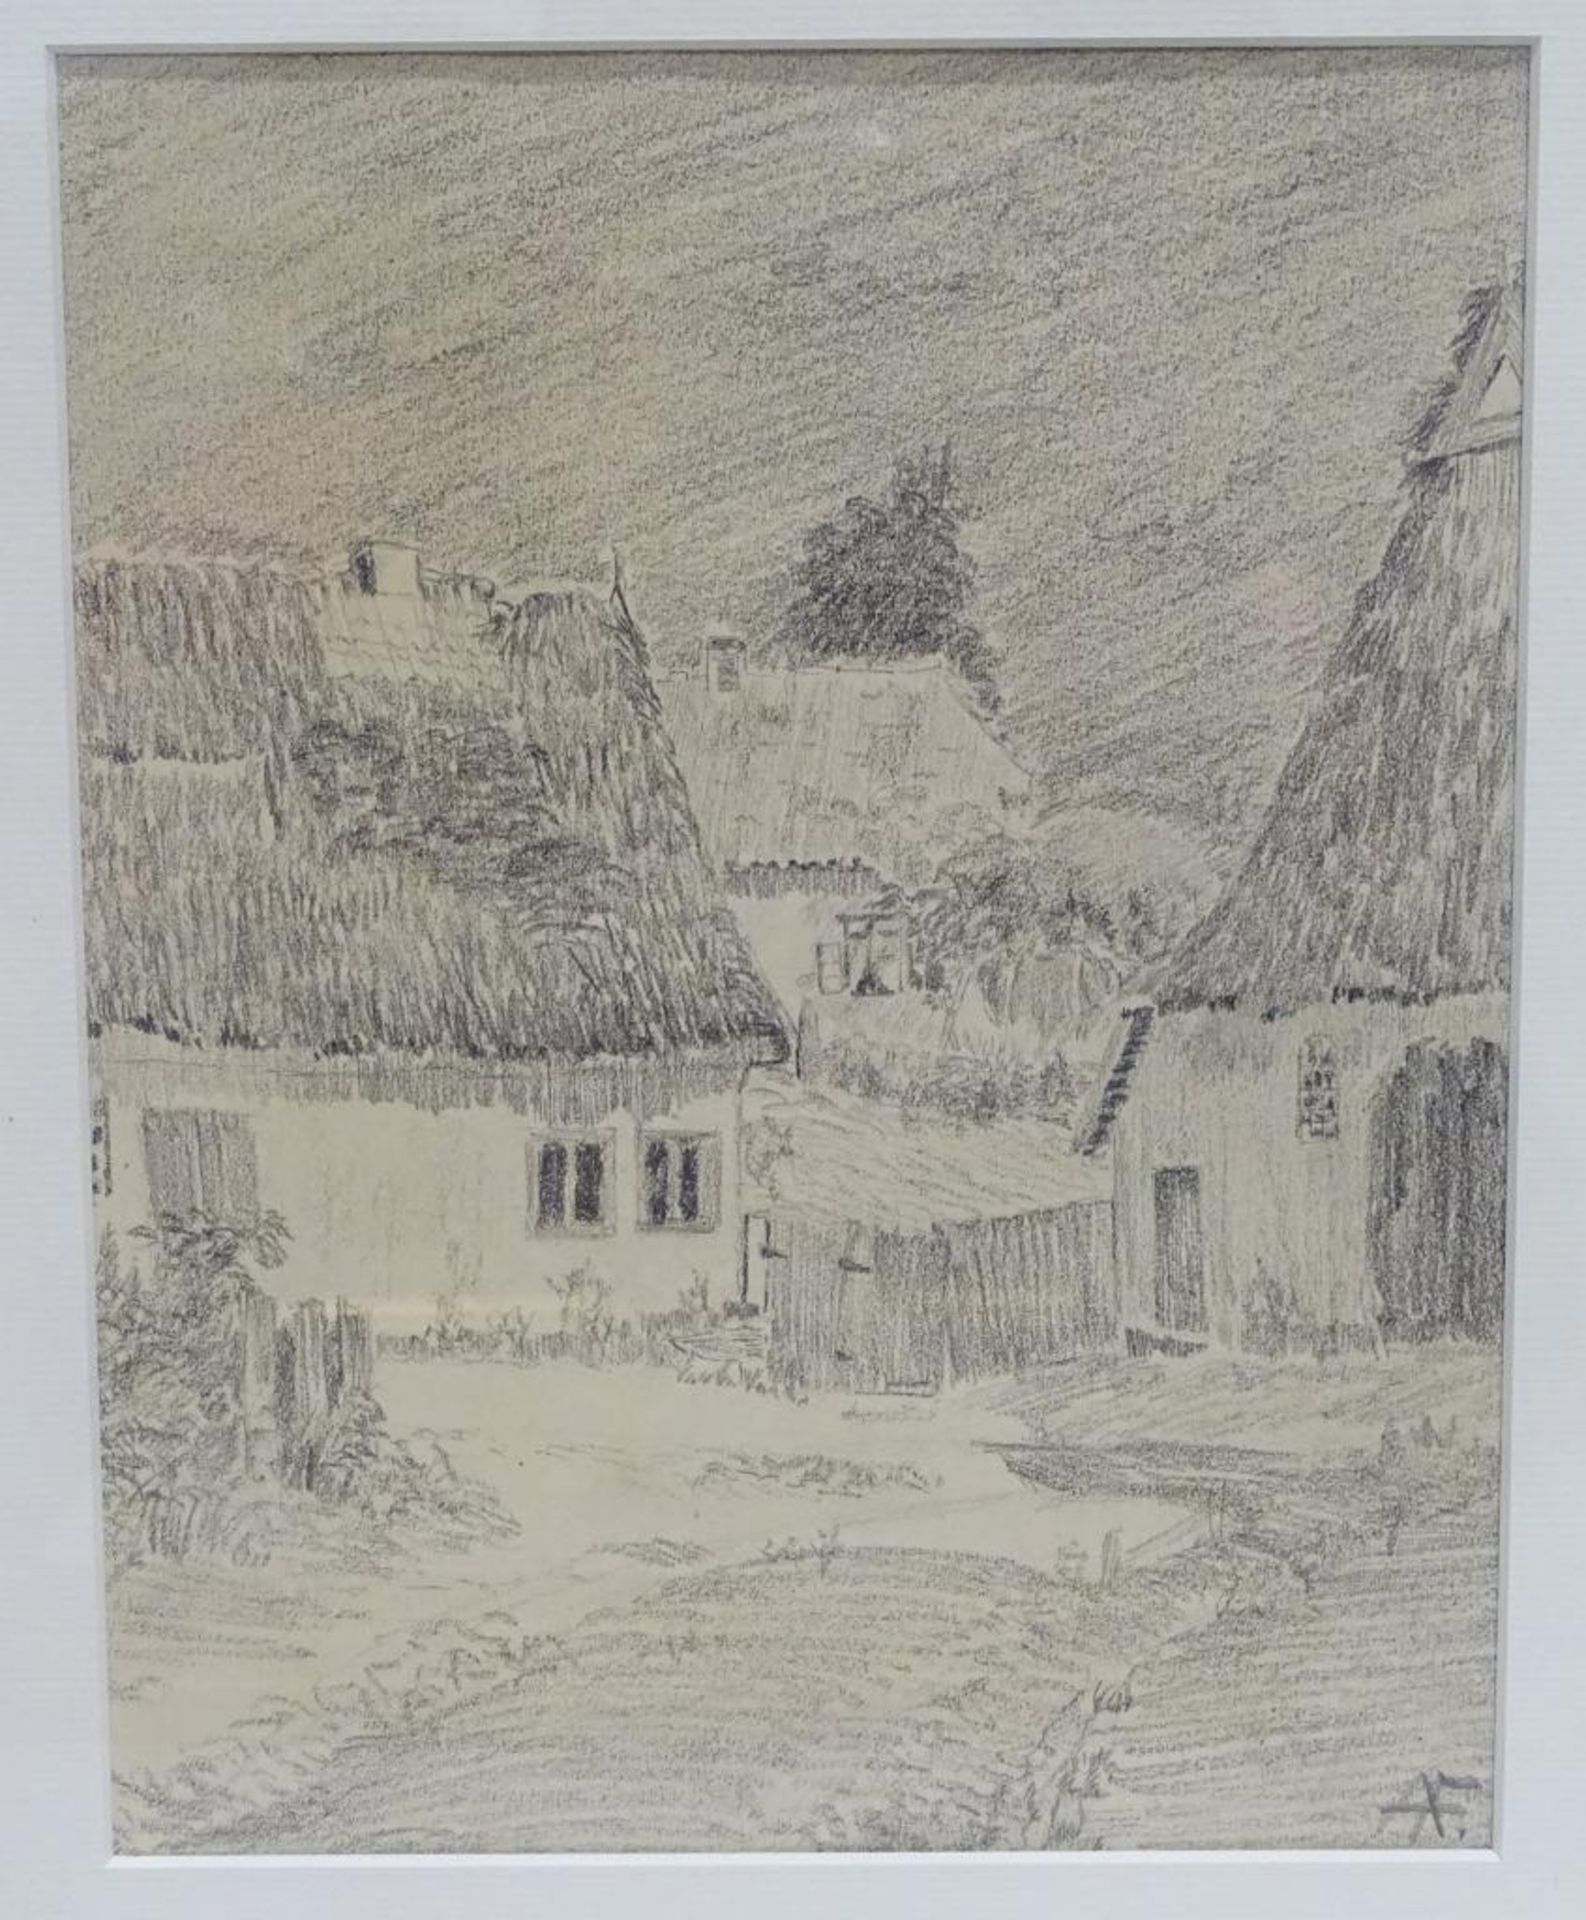 Bleistift Zeichnung AF "Anna Feldhusen", Bauernhaus Ansichten,ger/Glas,RG 42x32 cm, MG 24x19cm